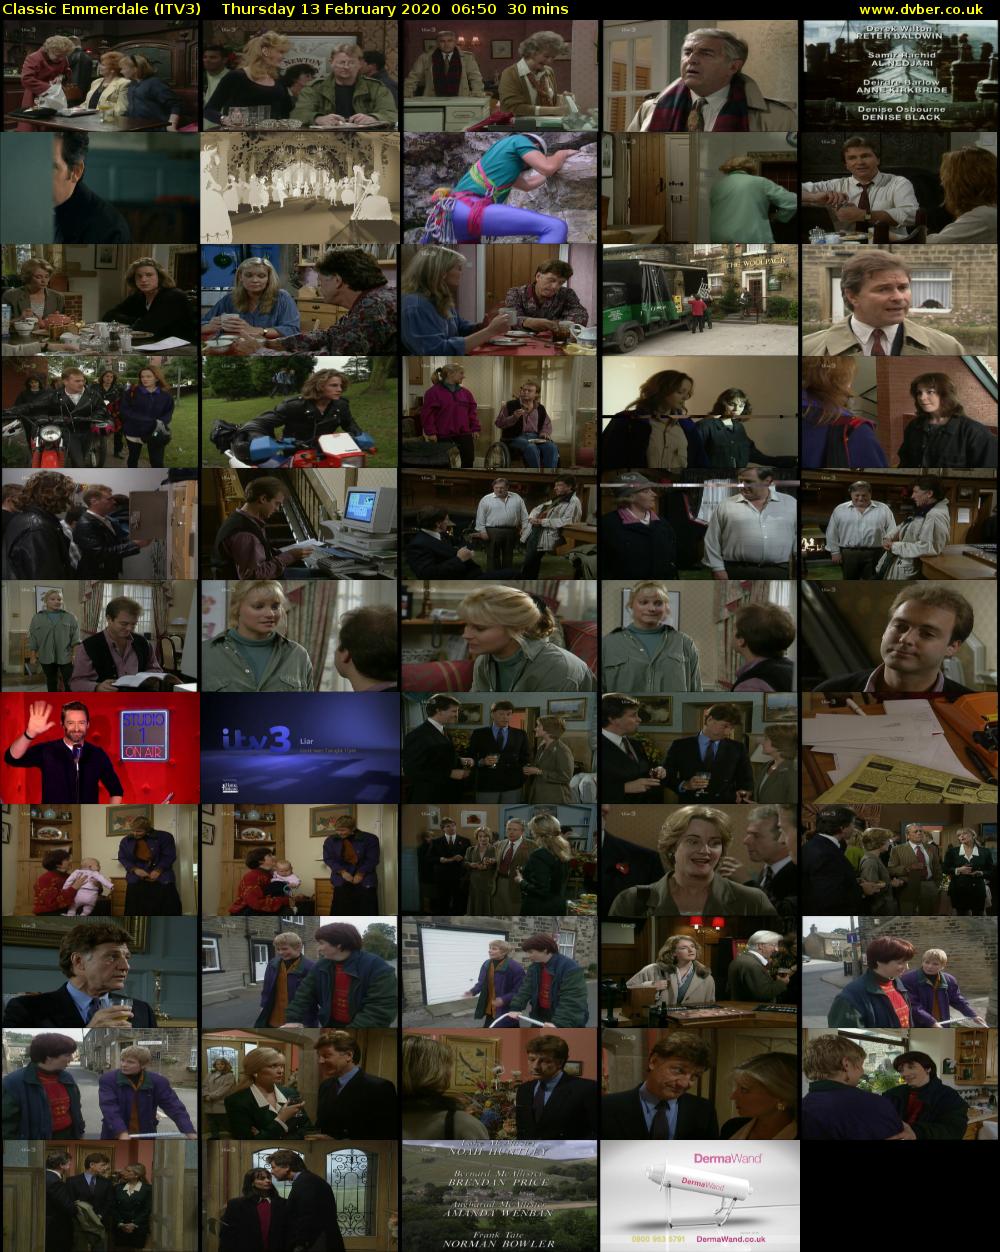 Classic Emmerdale (ITV3) Thursday 13 February 2020 06:50 - 07:20